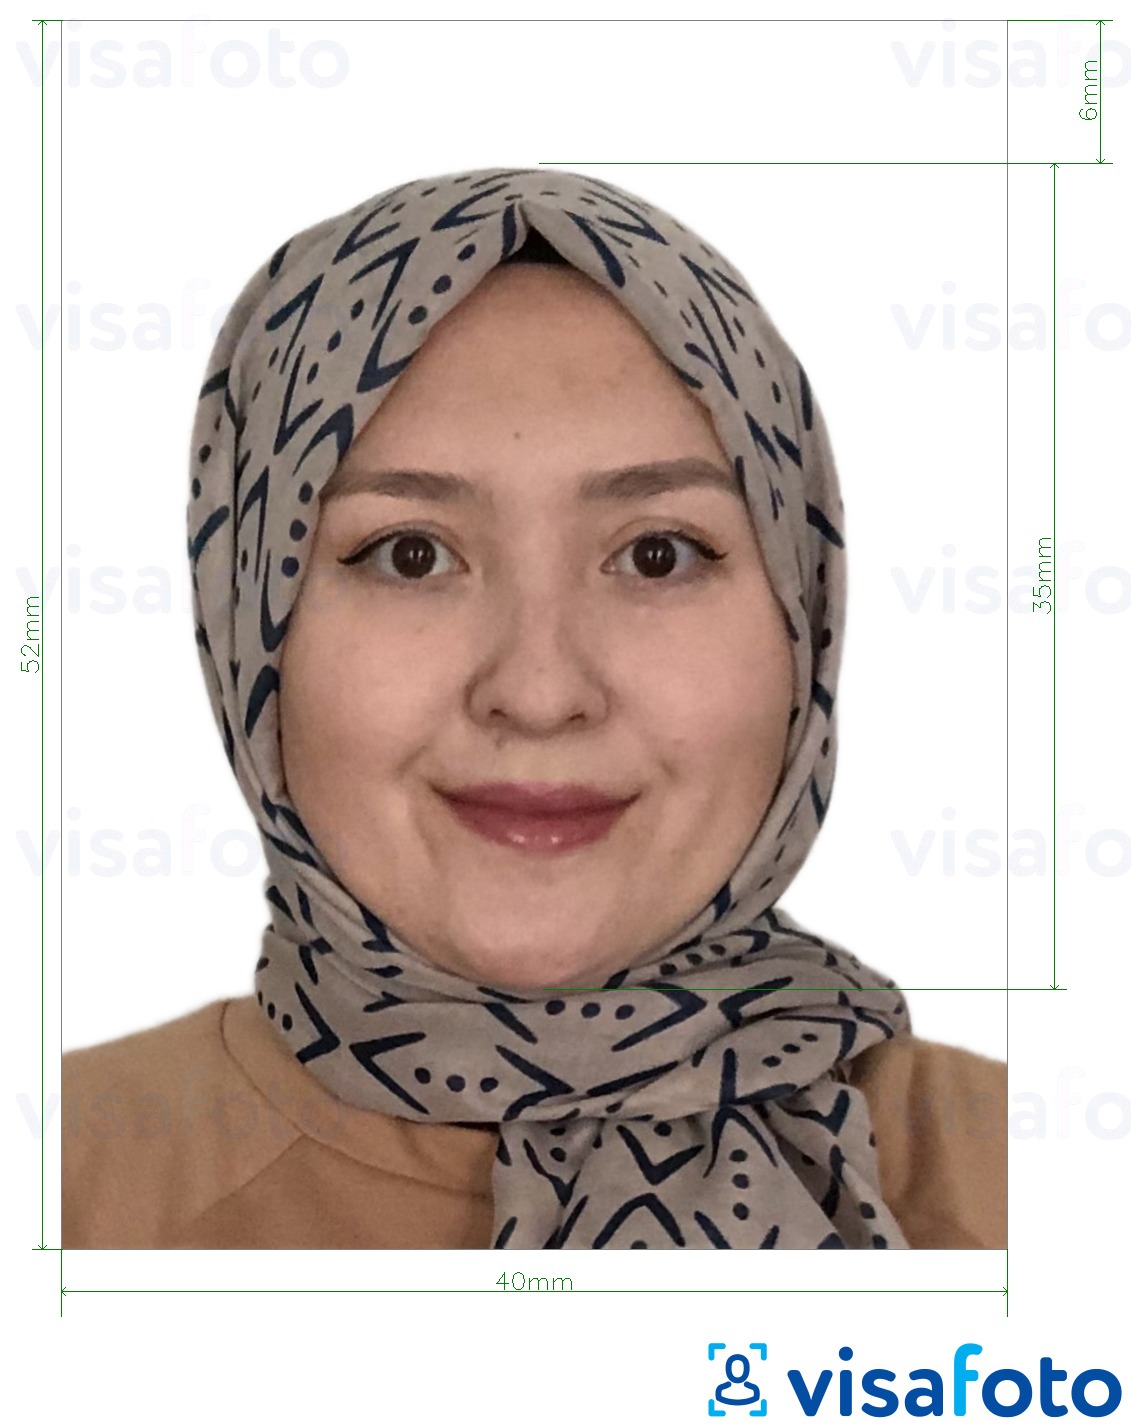 Primer fotografije za Brunejski potni list 5.2x4 cm (52x40 mm) z natančno specifikacijo velikosti